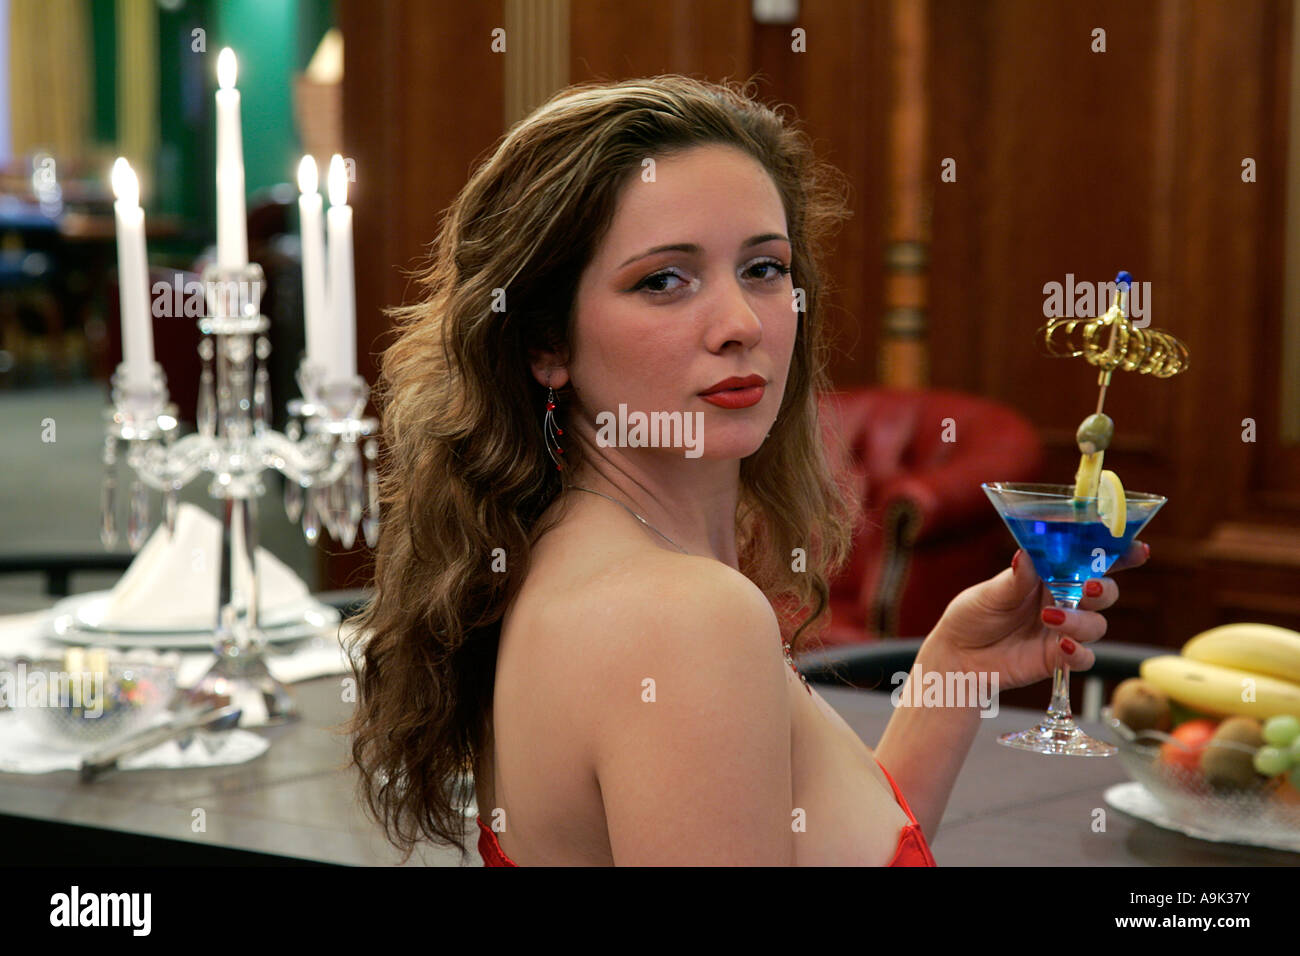 Pretty Woman at VIP Casino Bar Stock Photo